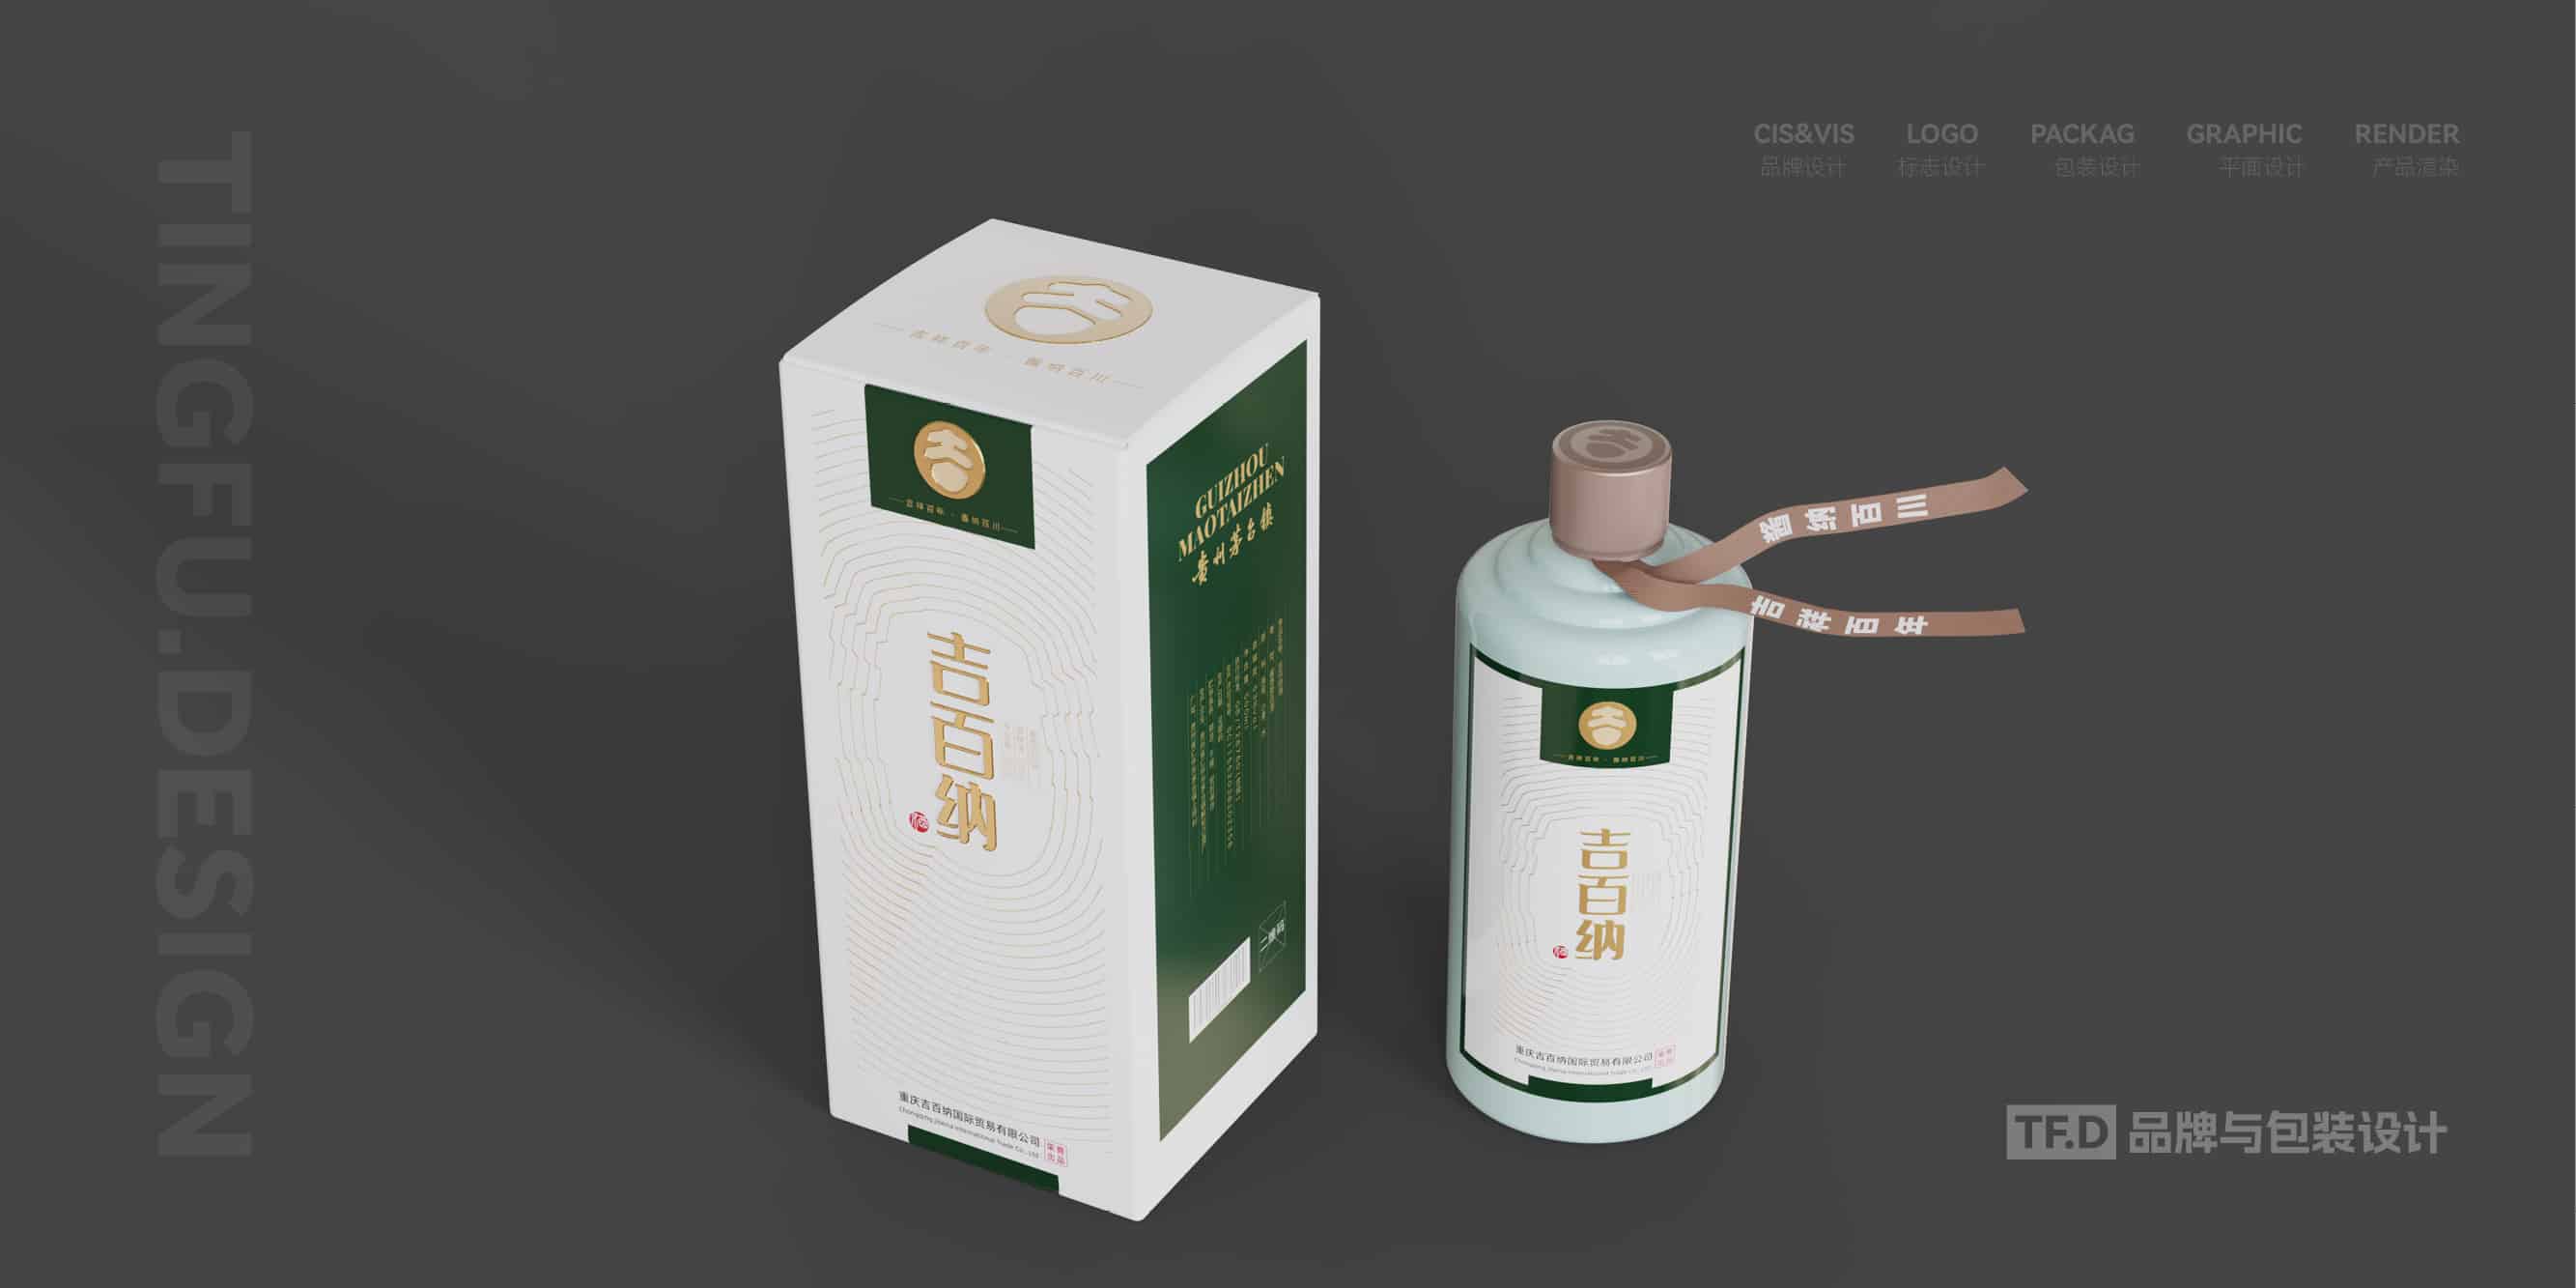 TFD品牌与包装设计-部分酒包装设计案例9-tuya.jpg